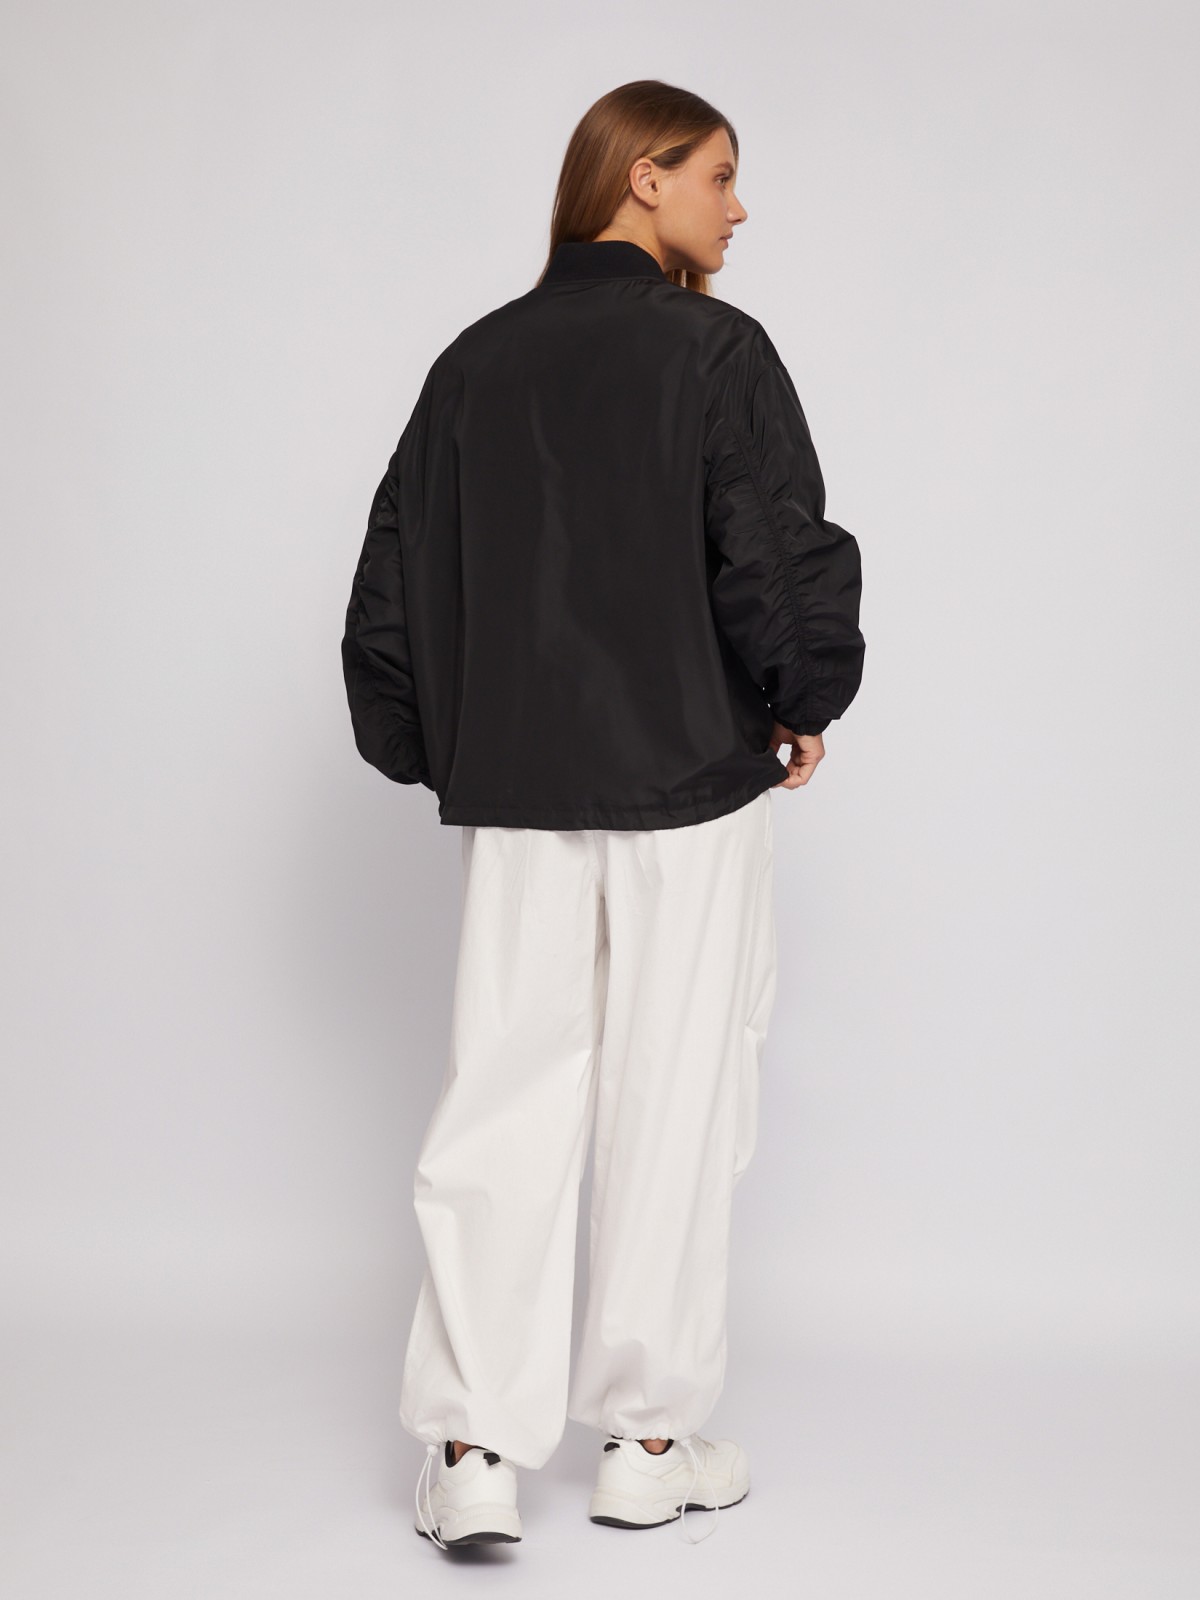 Лёгкая куртка-бомбер на молнии zolla 024215639194, цвет черный, размер XS - фото 6